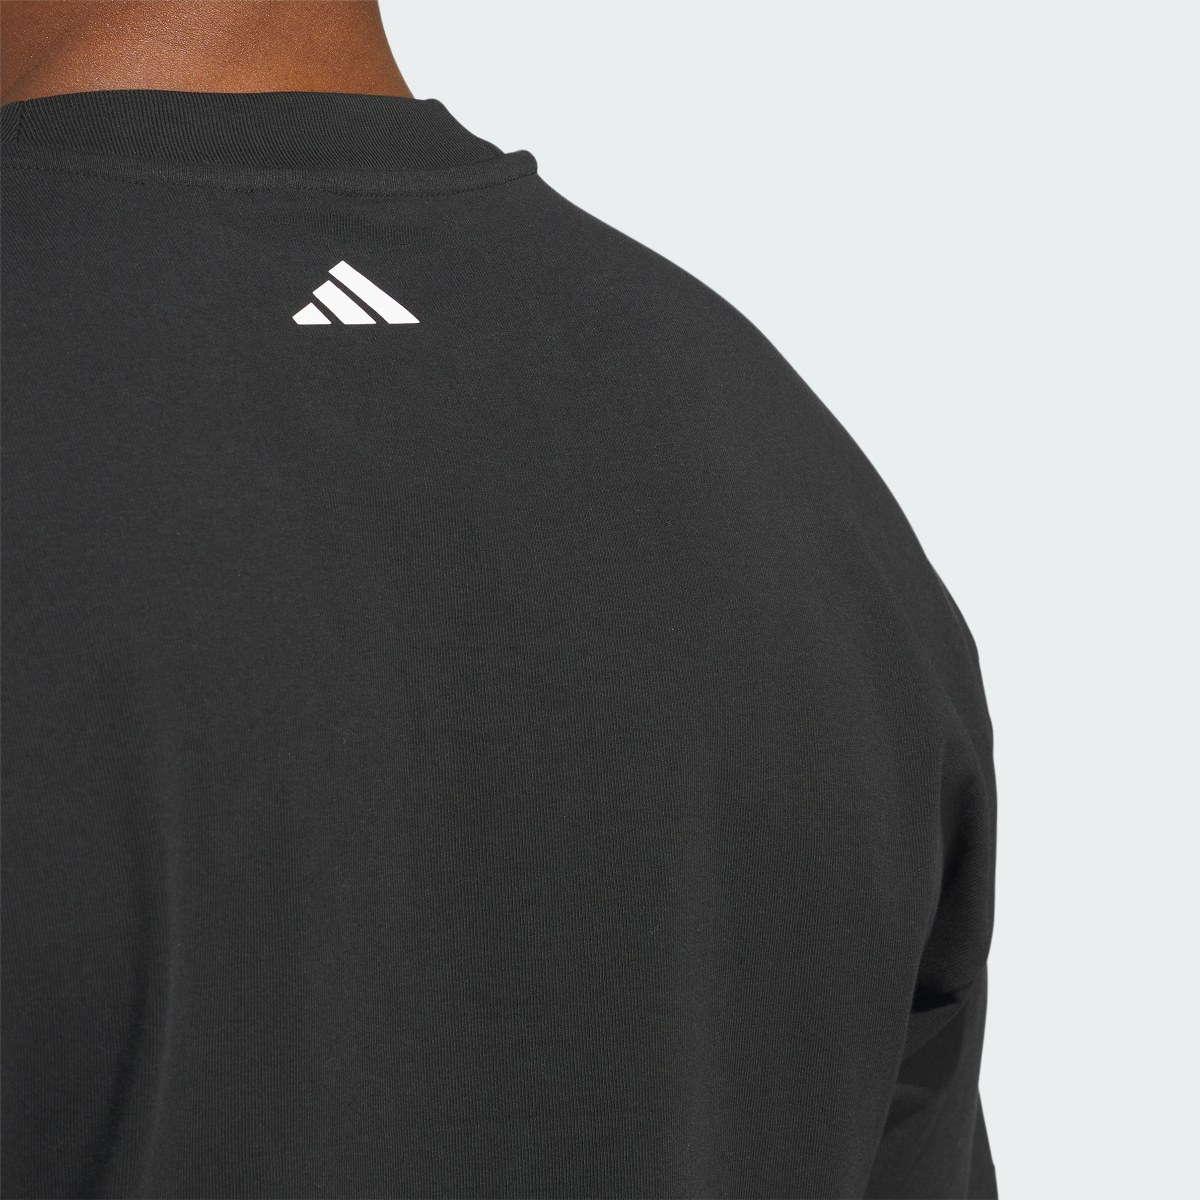 Adidas T-shirt Select adidas Basketball. 7